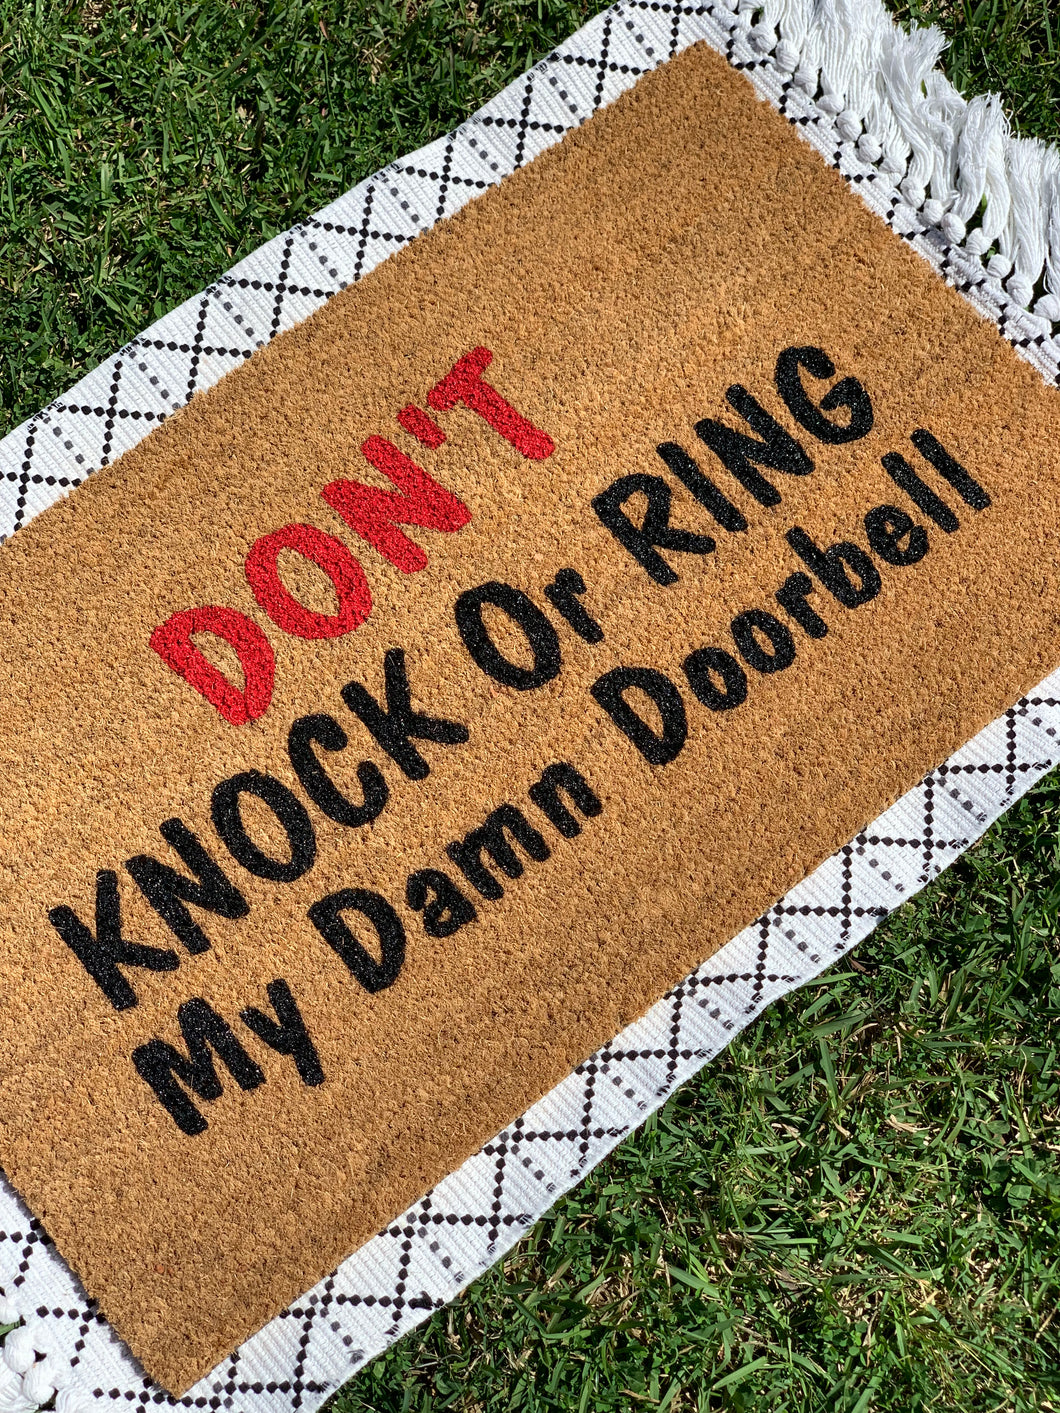 Ring Ding Dong Doormat – HeartlandCo